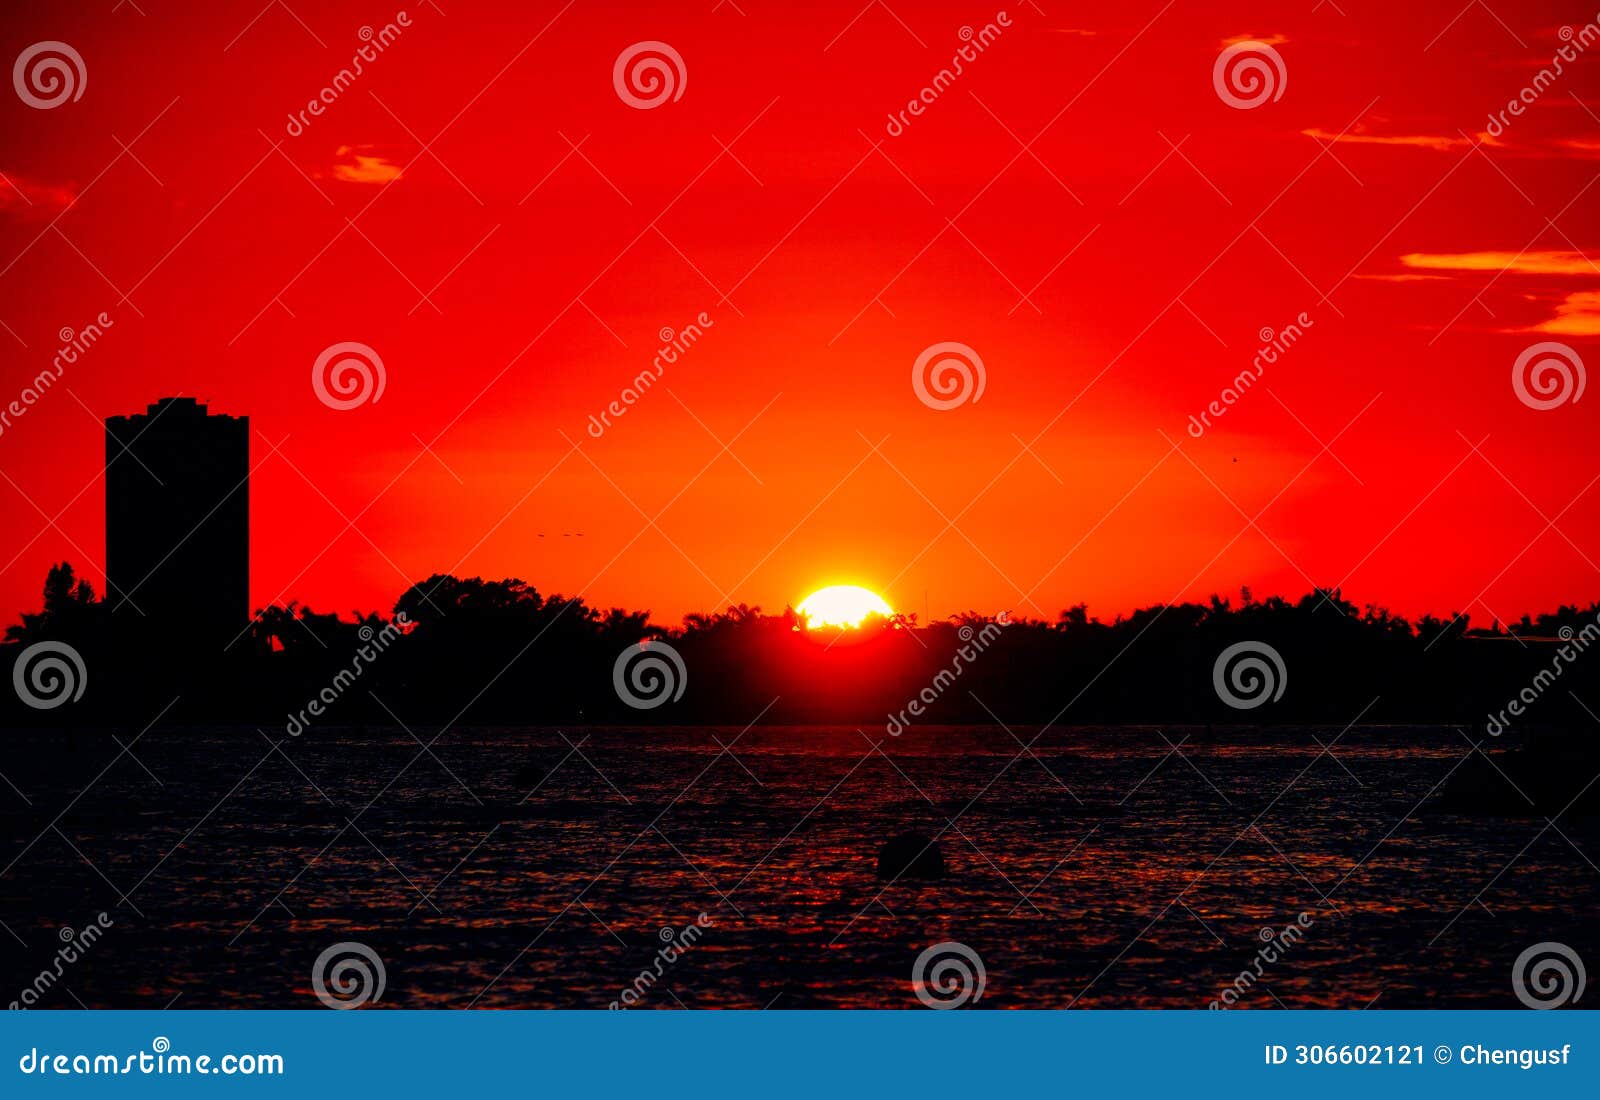 sarasota bay harbor and bay front sun set landscape